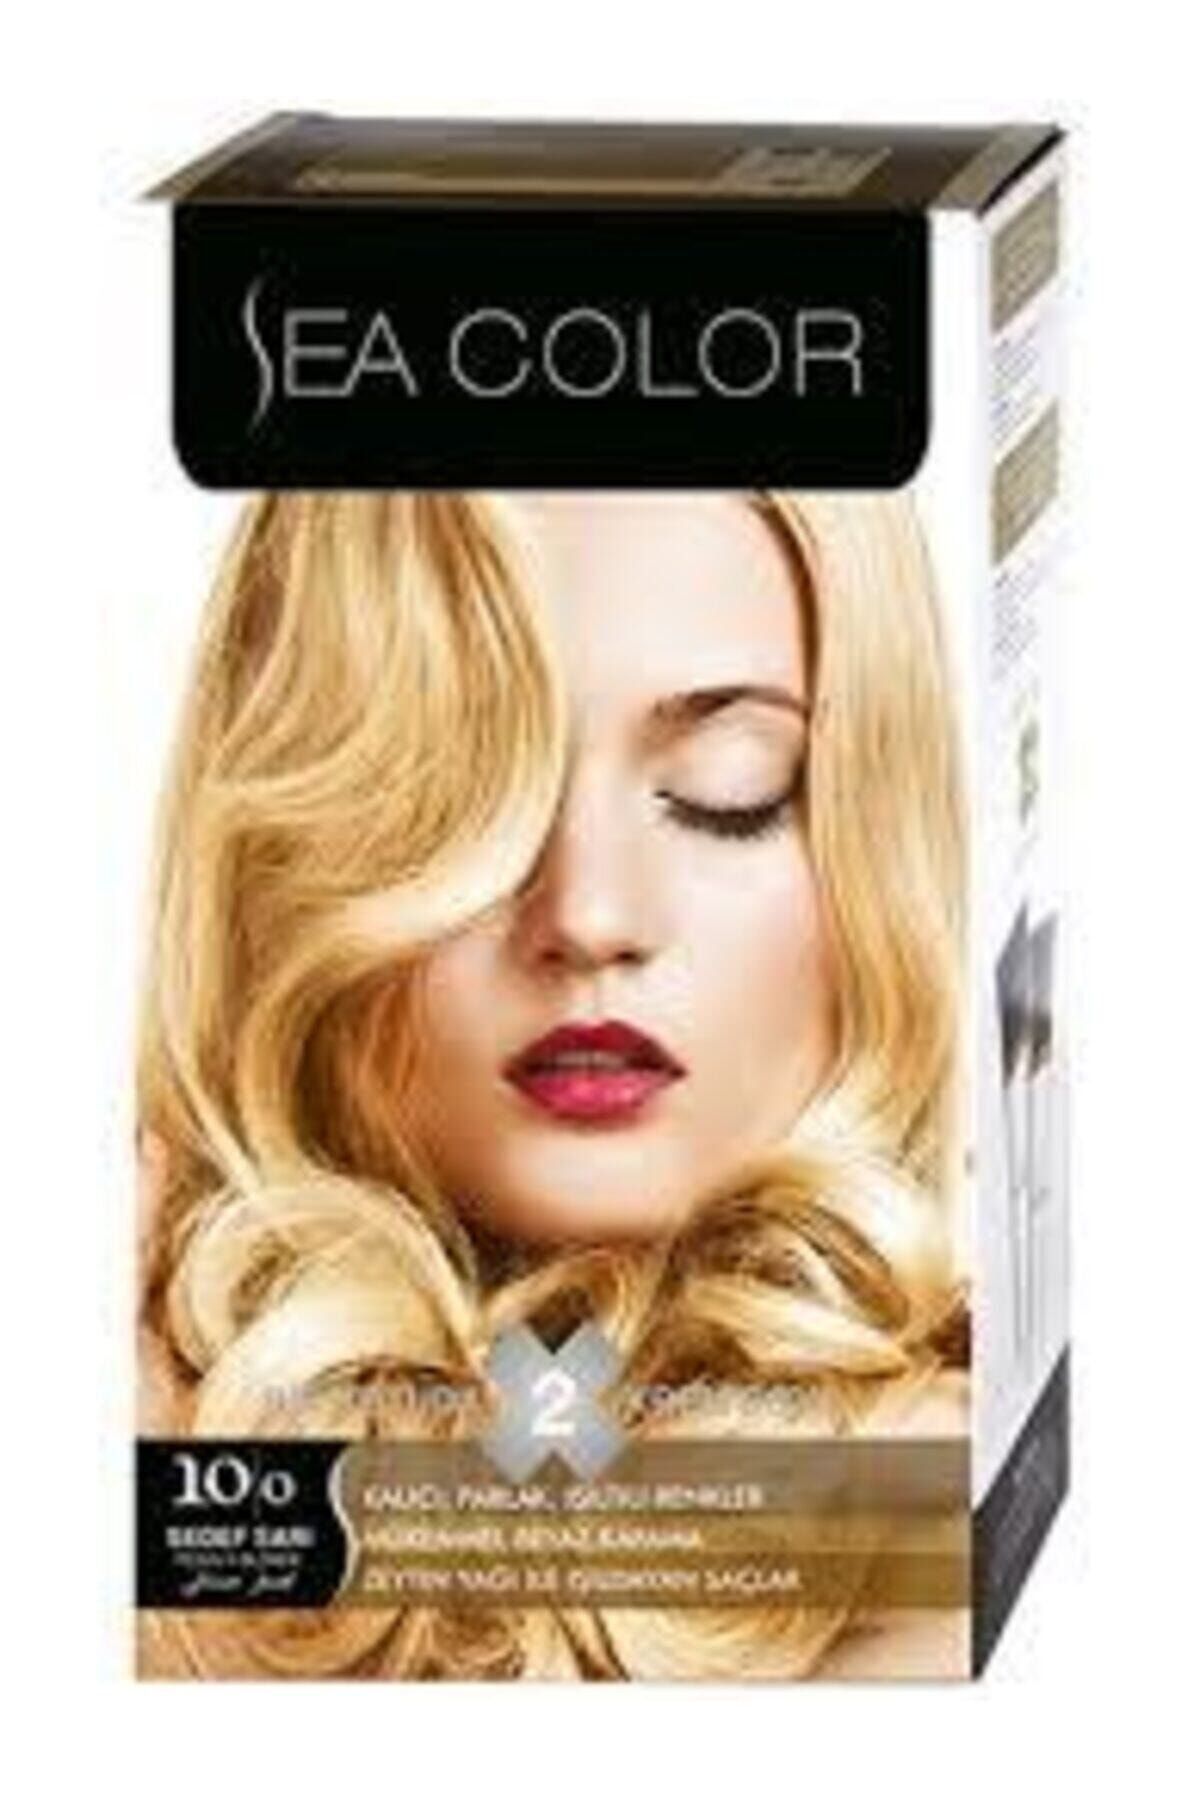 Sea Color Saç Boyası 10,0 Sedef Sarısı